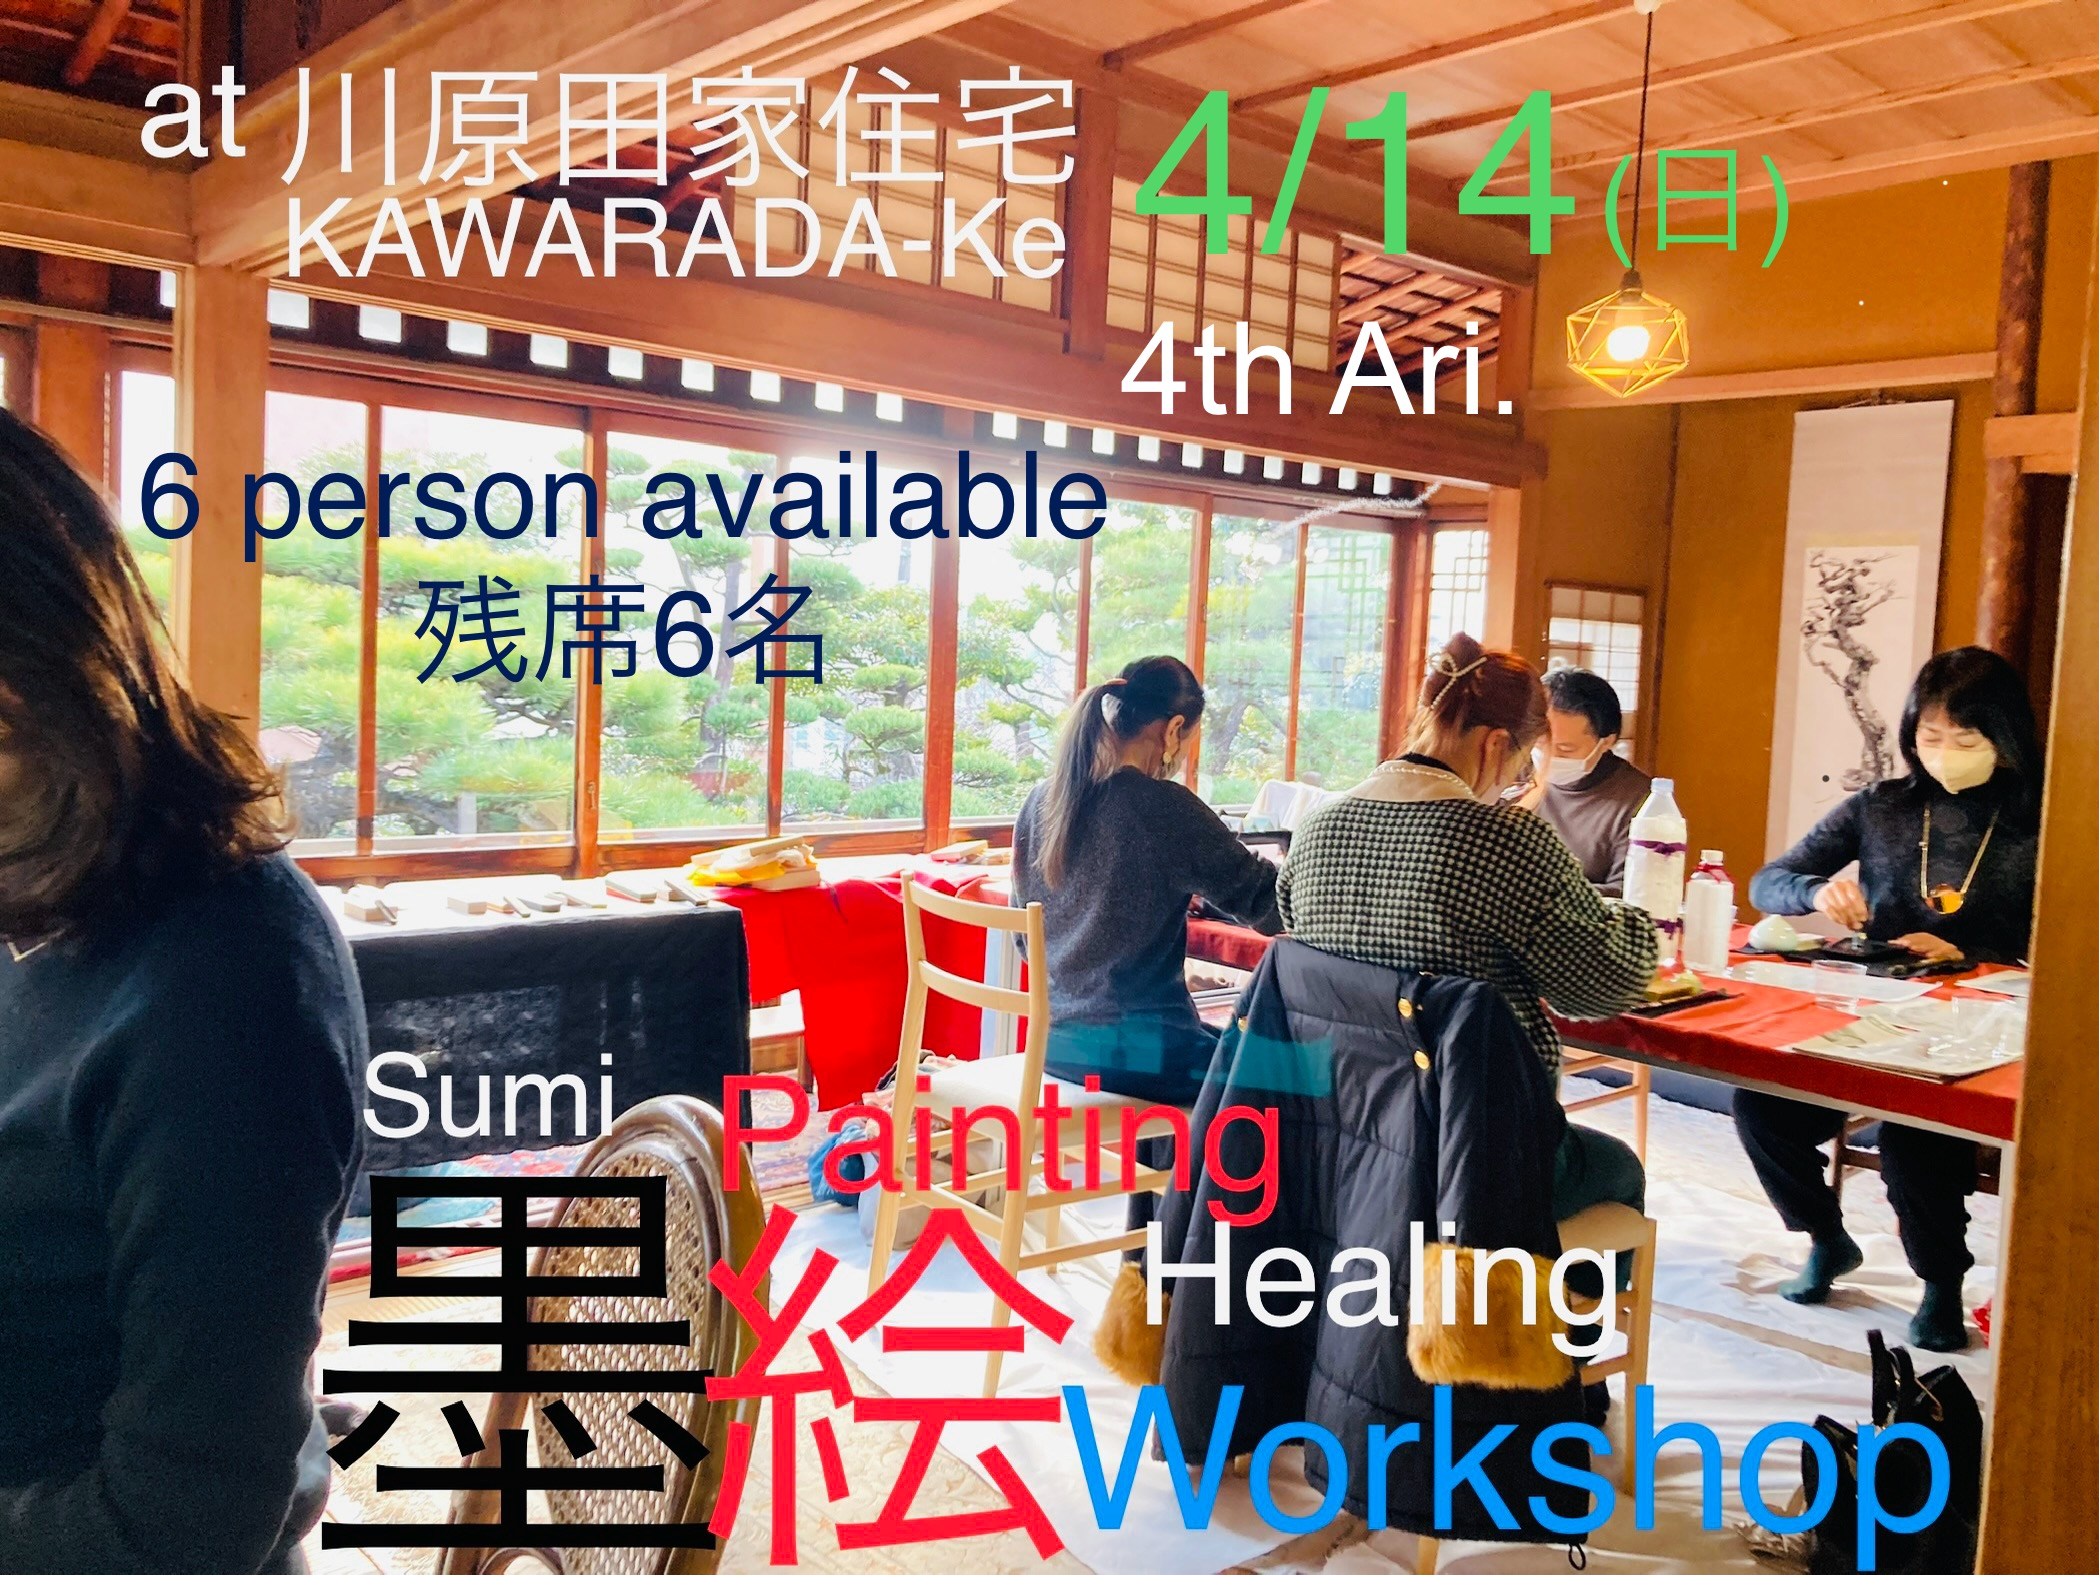 【ご報告】満席! 4/14(日)「墨絵Hearling Workshop」